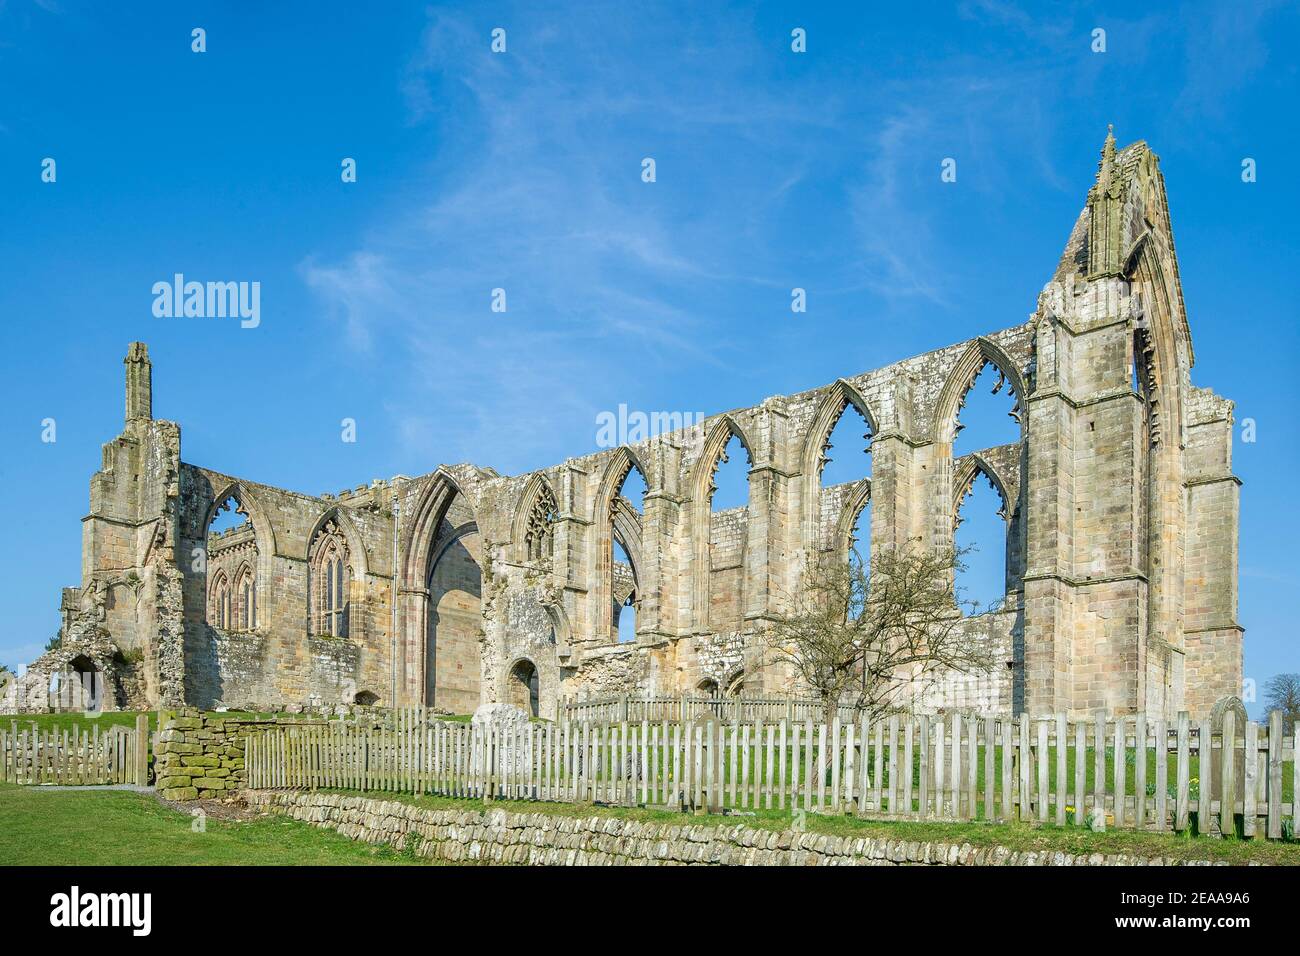 Las ruinas de Bolton Abbey en Yorkshire fotografiadas contra un cielo azul Foto de stock